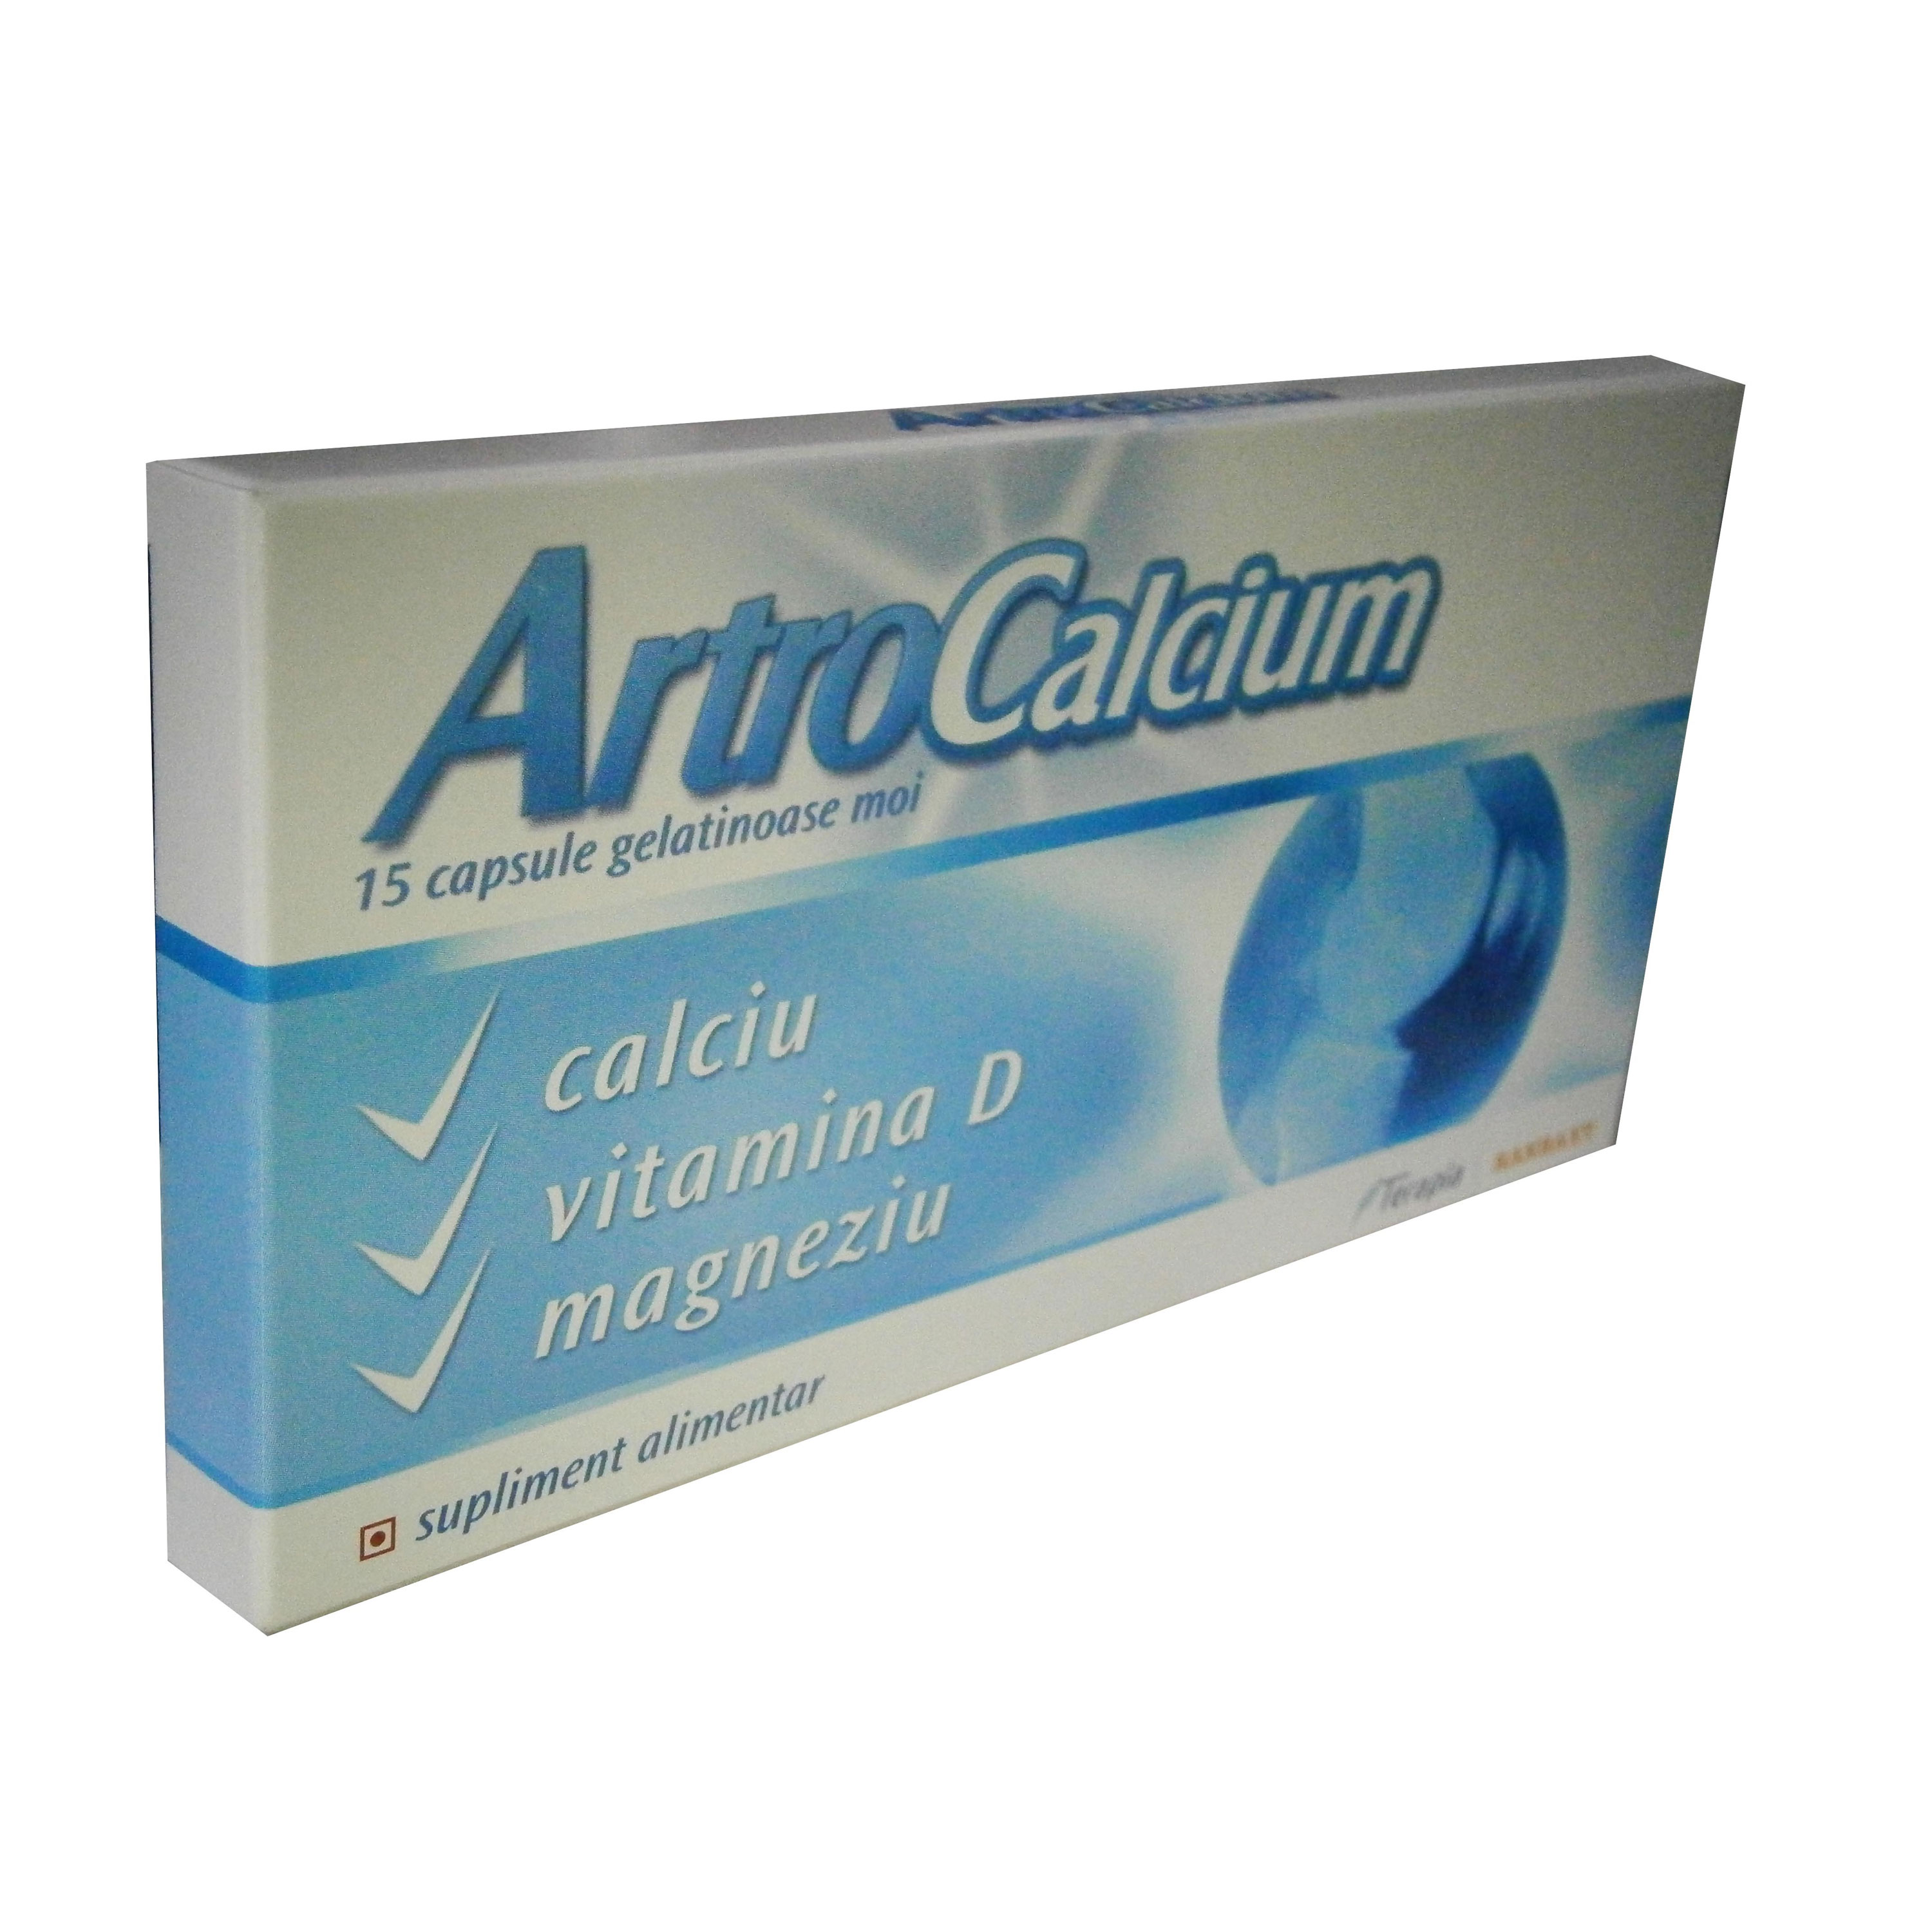 Artrocalcium 15 capsule moi